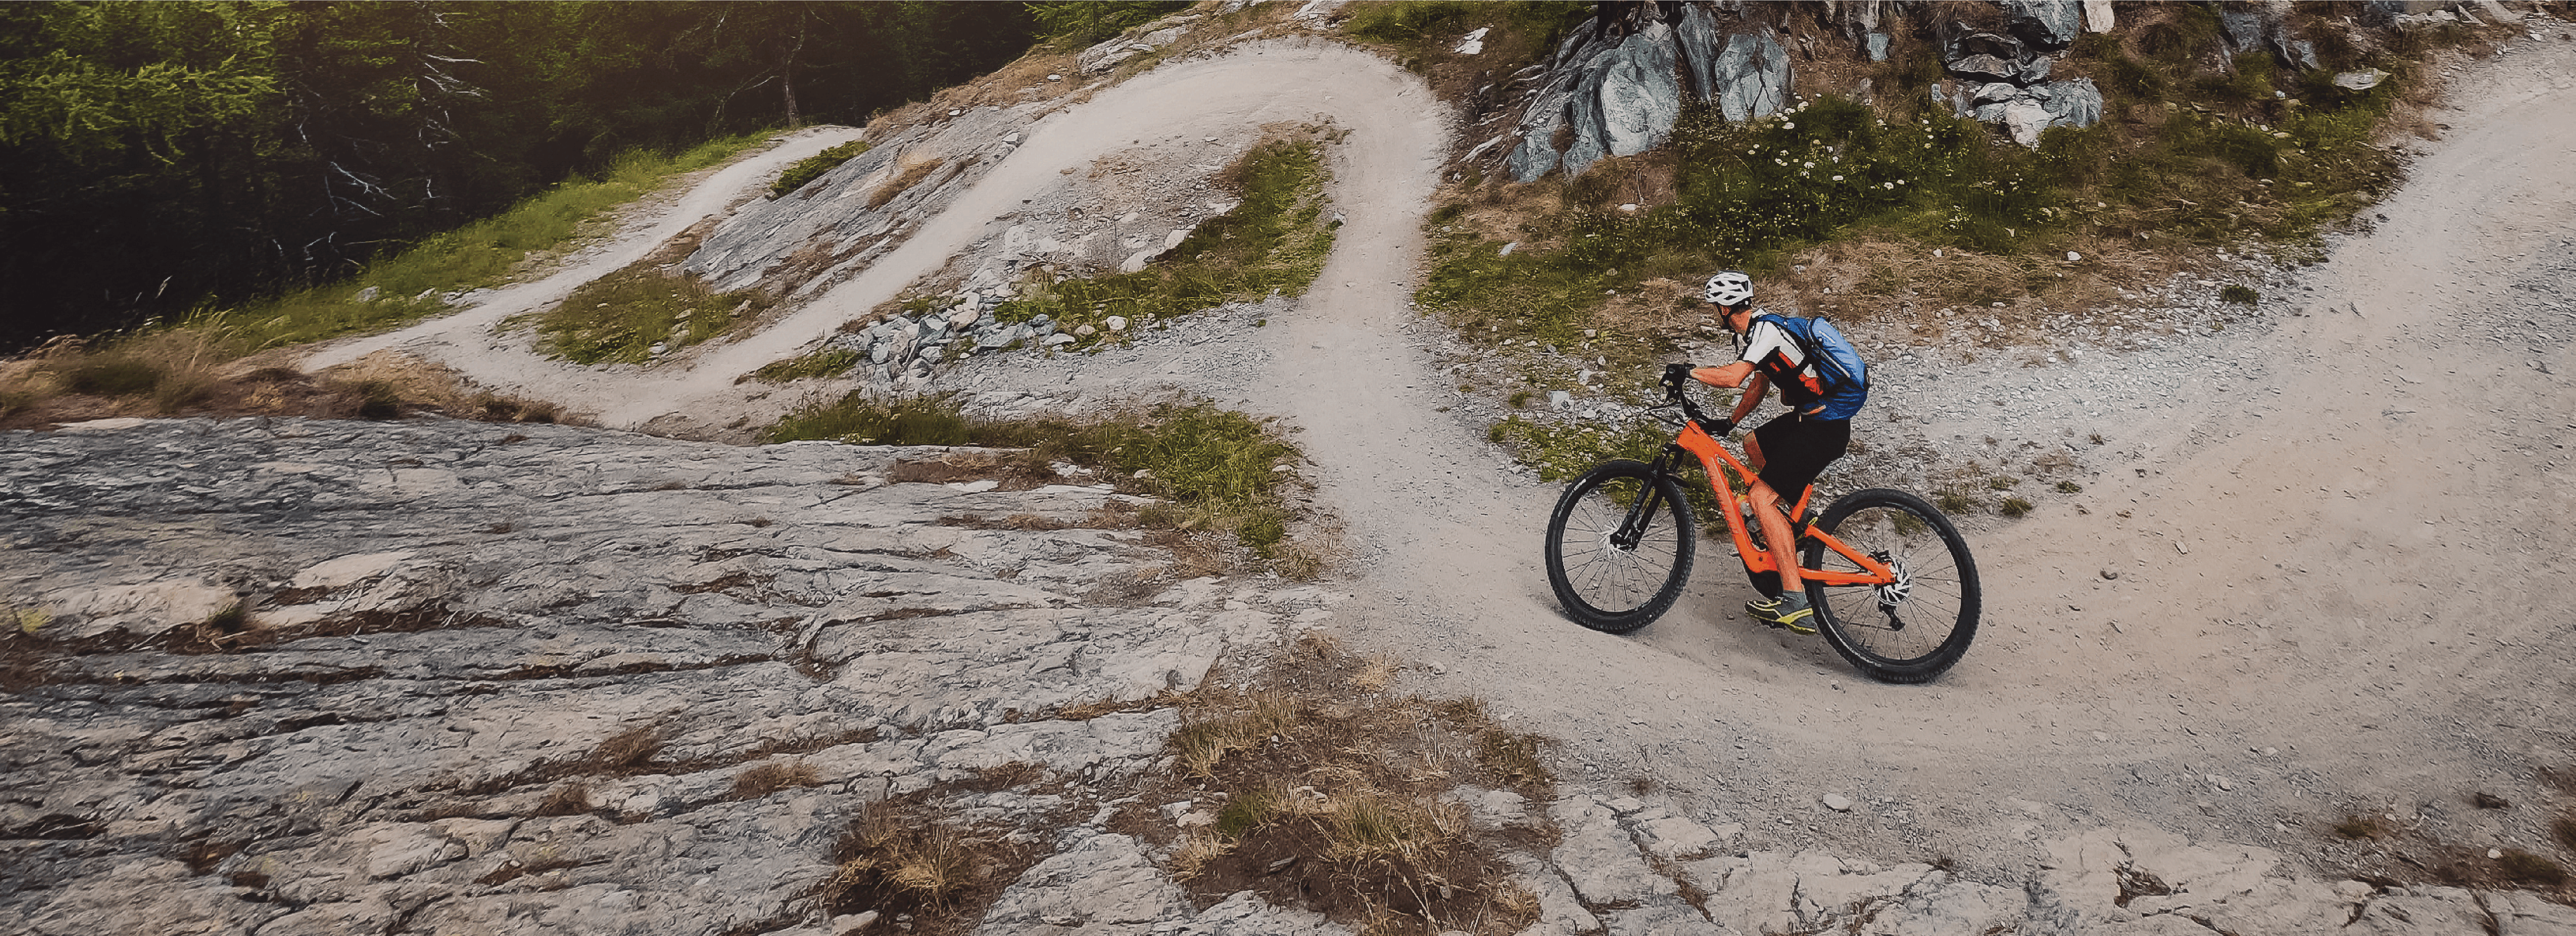 A man rides his orange mountain bike down a dirt trail.